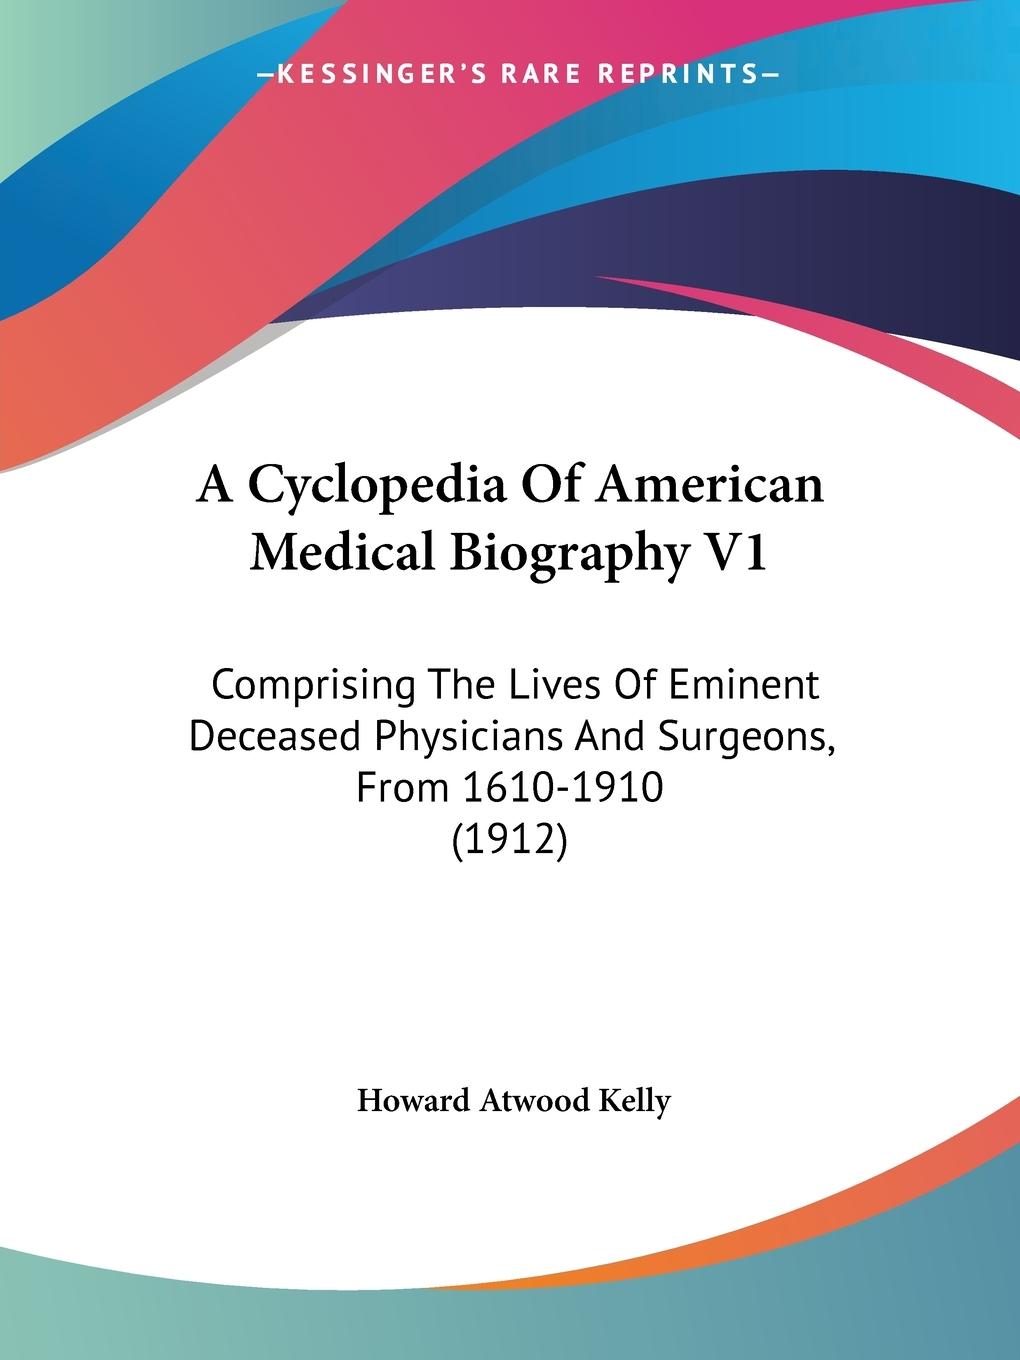 A Cyclopedia Of American Medical Biography V1 - Kelly, Howard Atwood